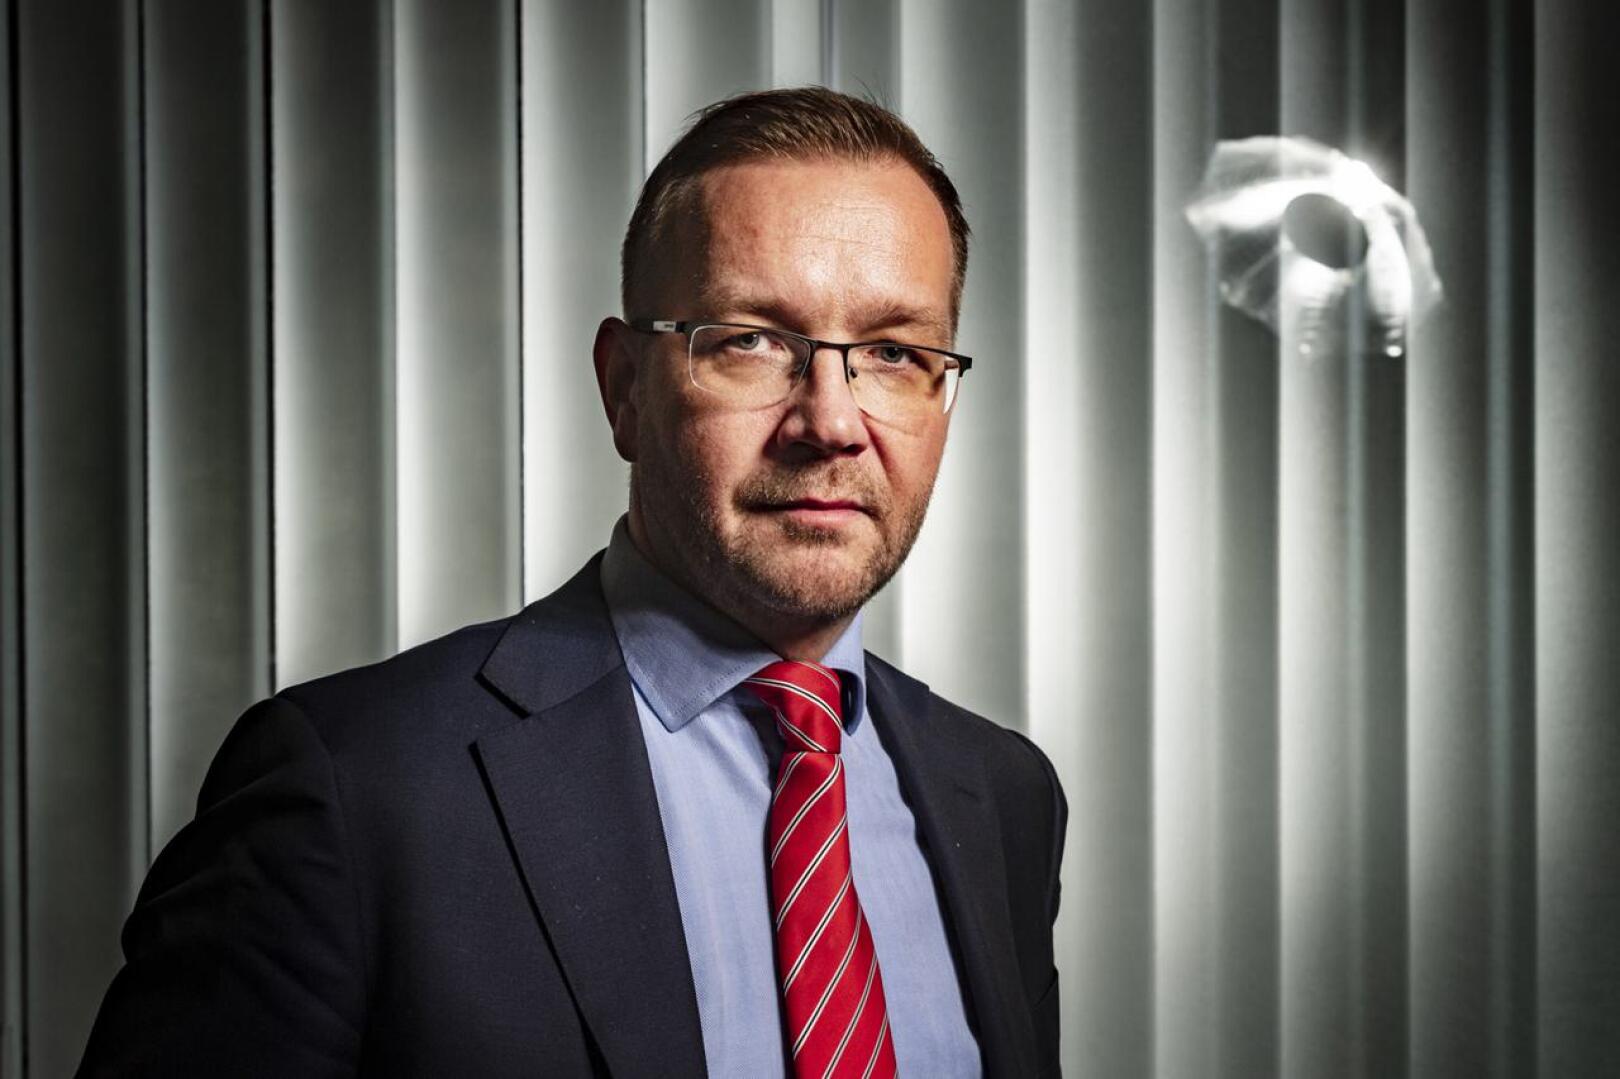 Kahden viikon aikana monen yrityksen näkymät ovat synkentyneet merkittävästi, kertoo Keskuskauppakamarin toimitusjohtaja Juho Romakkaniemi.